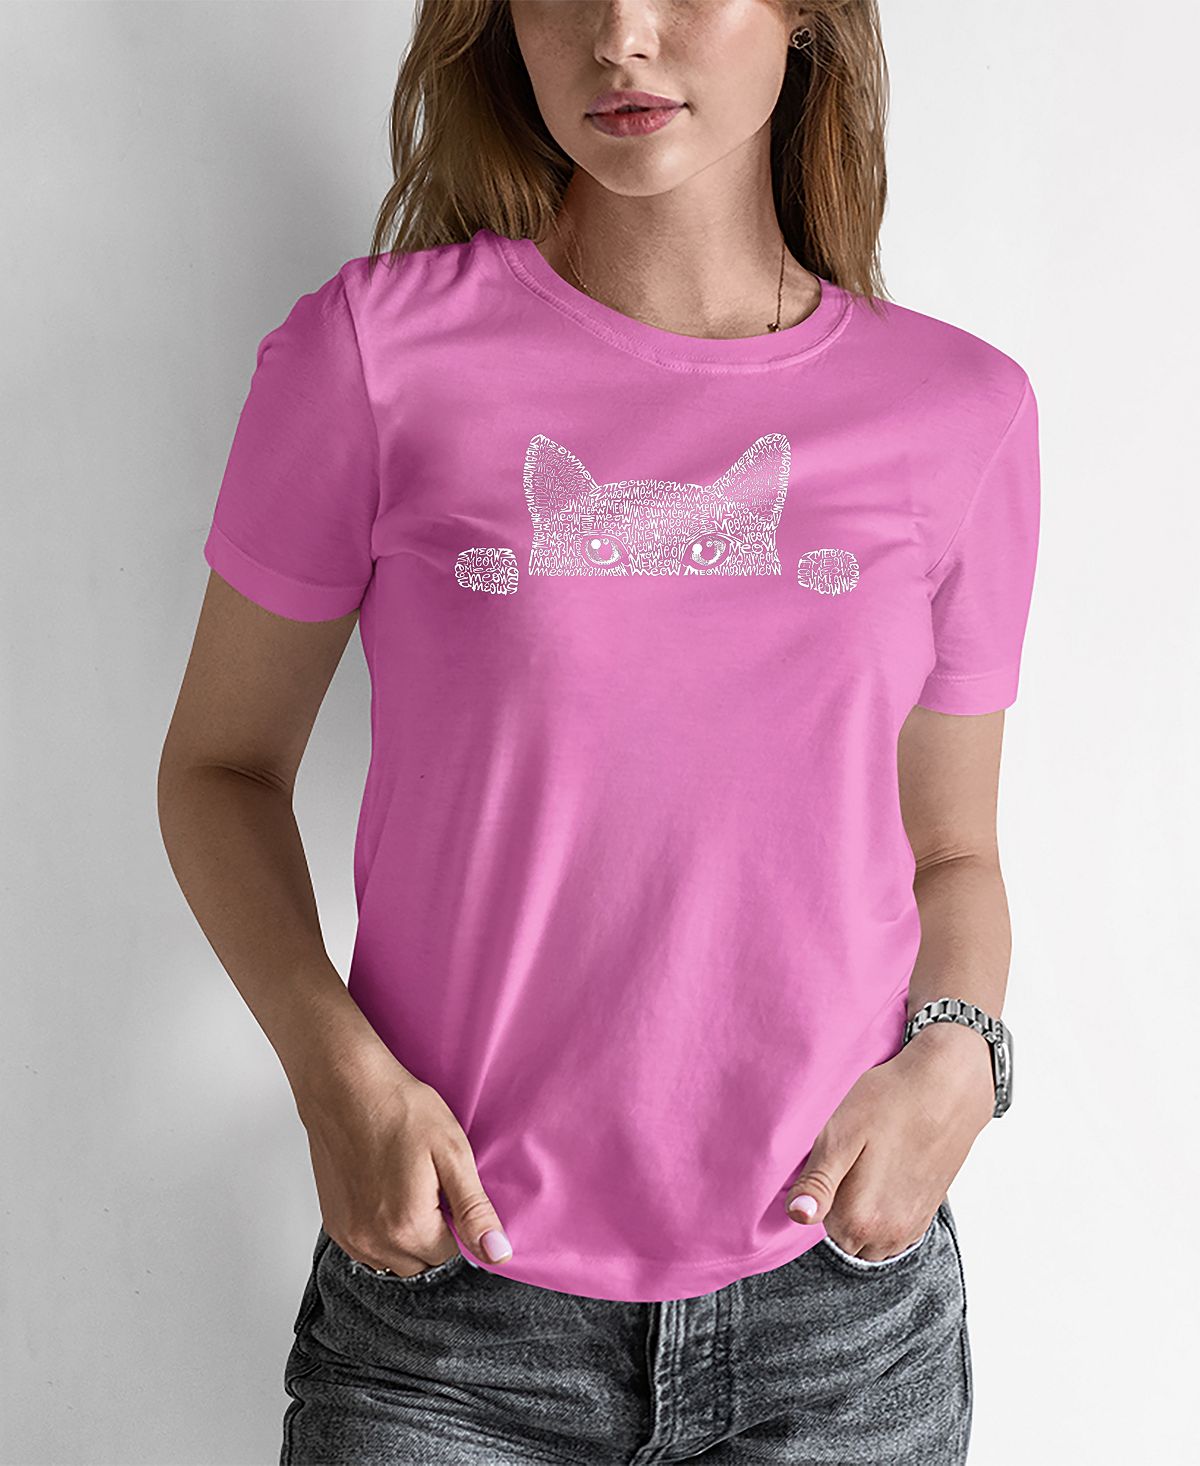 Женская футболка word art peeking cat LA Pop Art, розовый женская футболка word art кошка la pop art розовый